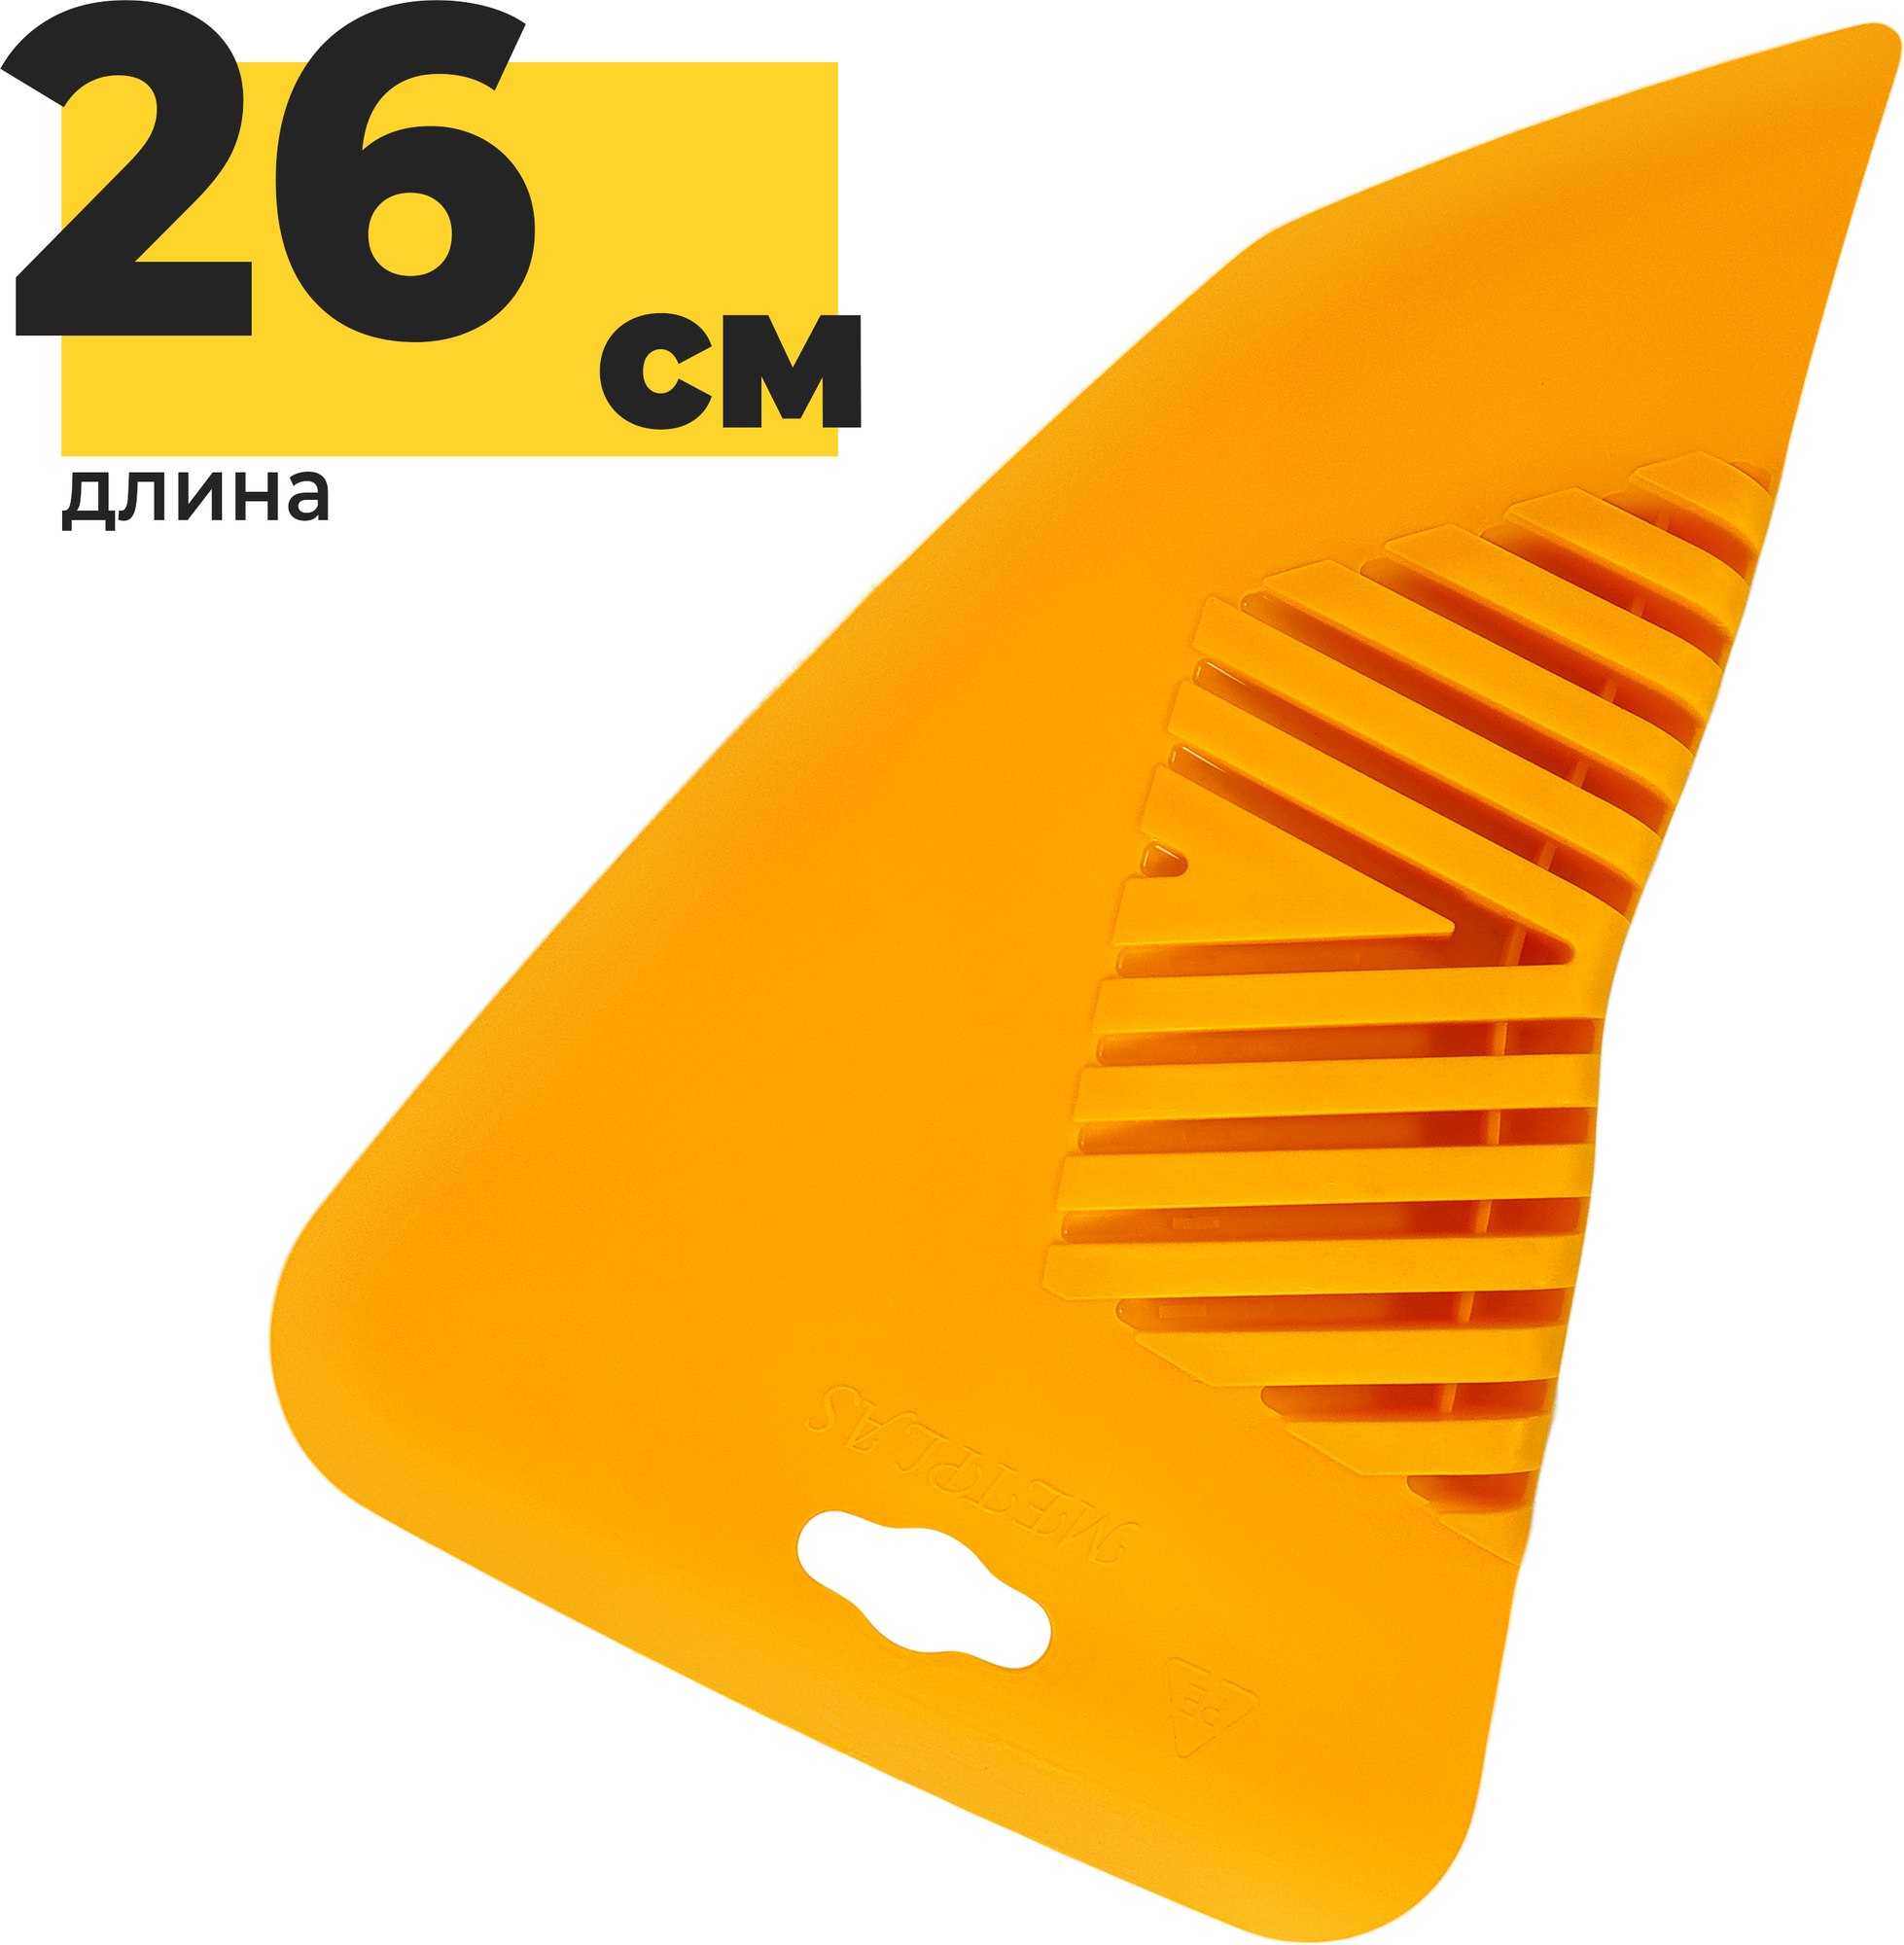 Шпатель для разглаживания обоев Yoma Home 26 см универсальный пластиковый желтый